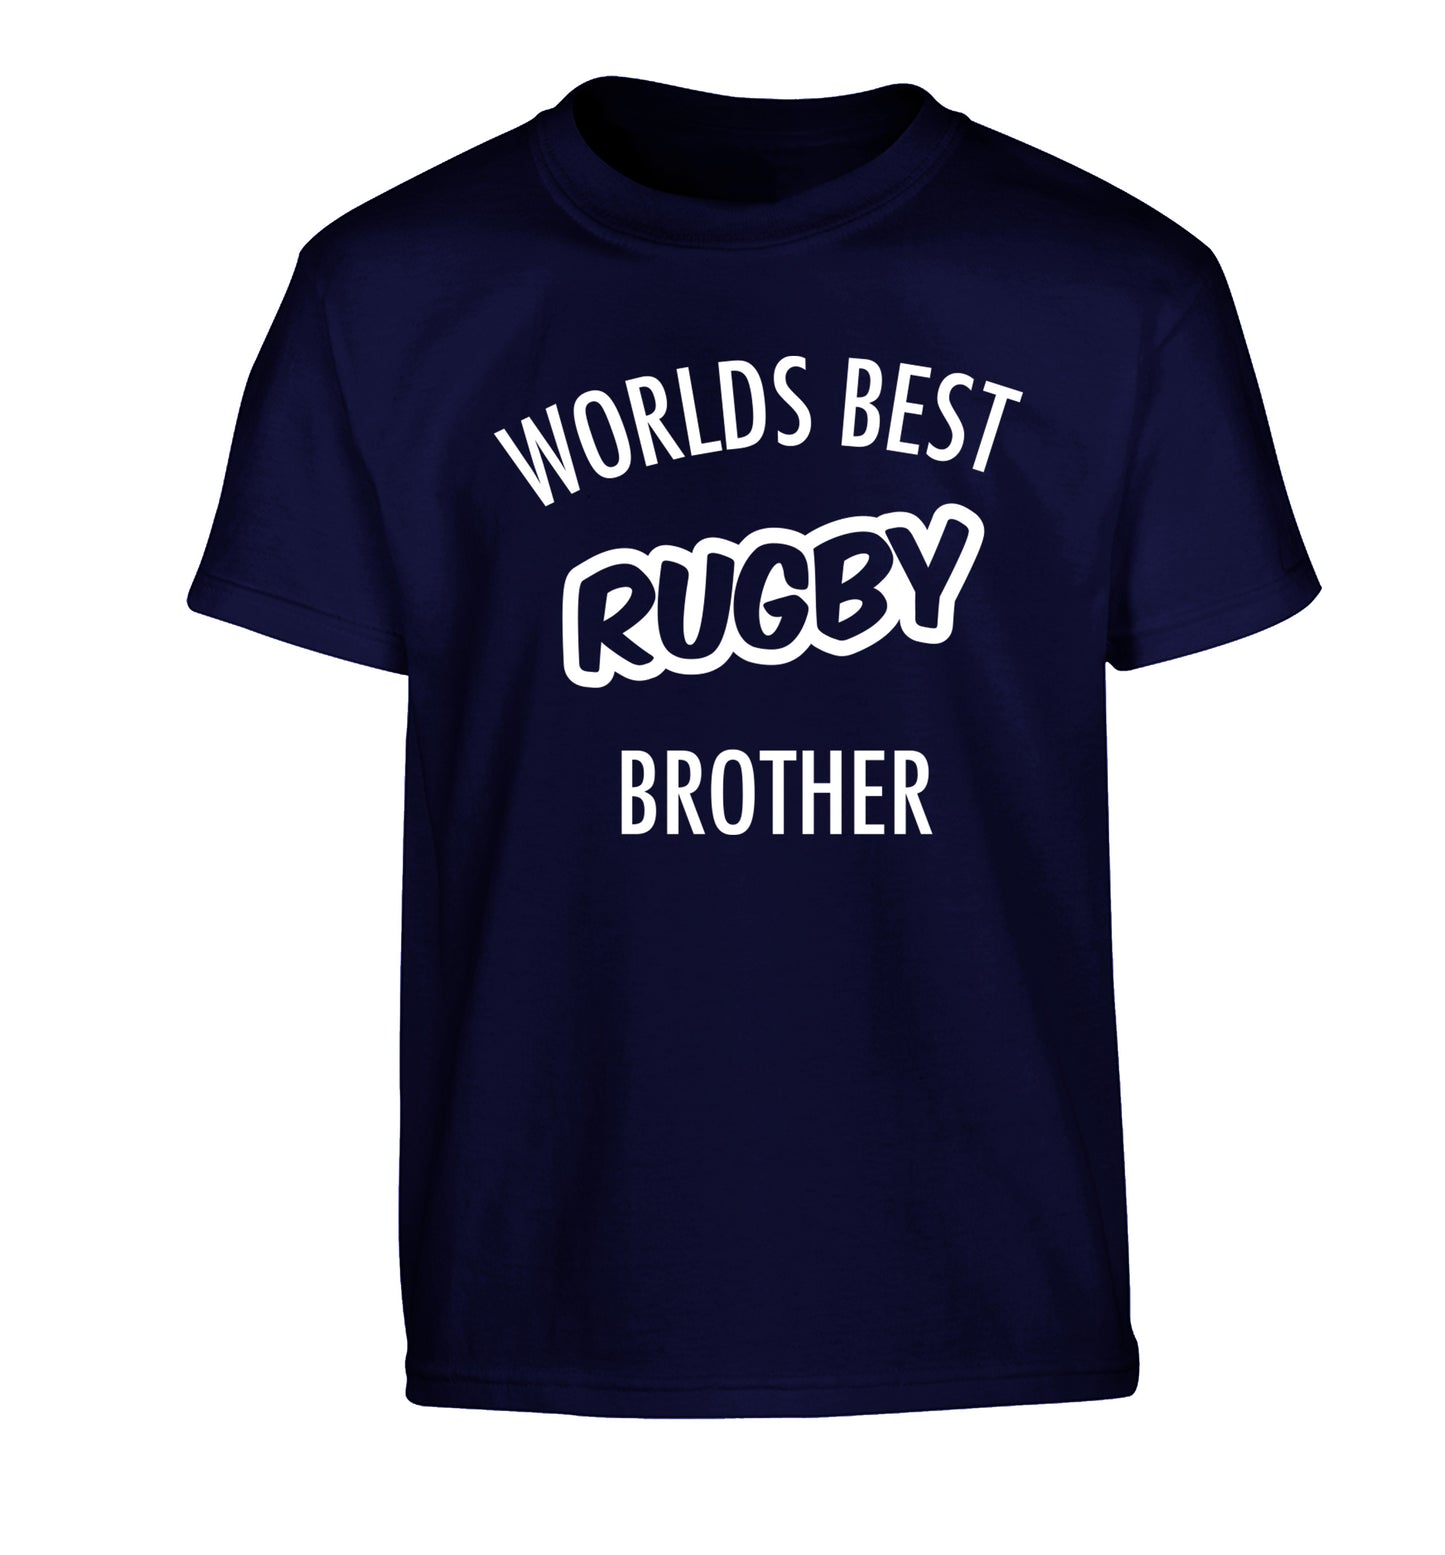 Worlds best rugby brother Children's navy Tshirt 12-13 Years